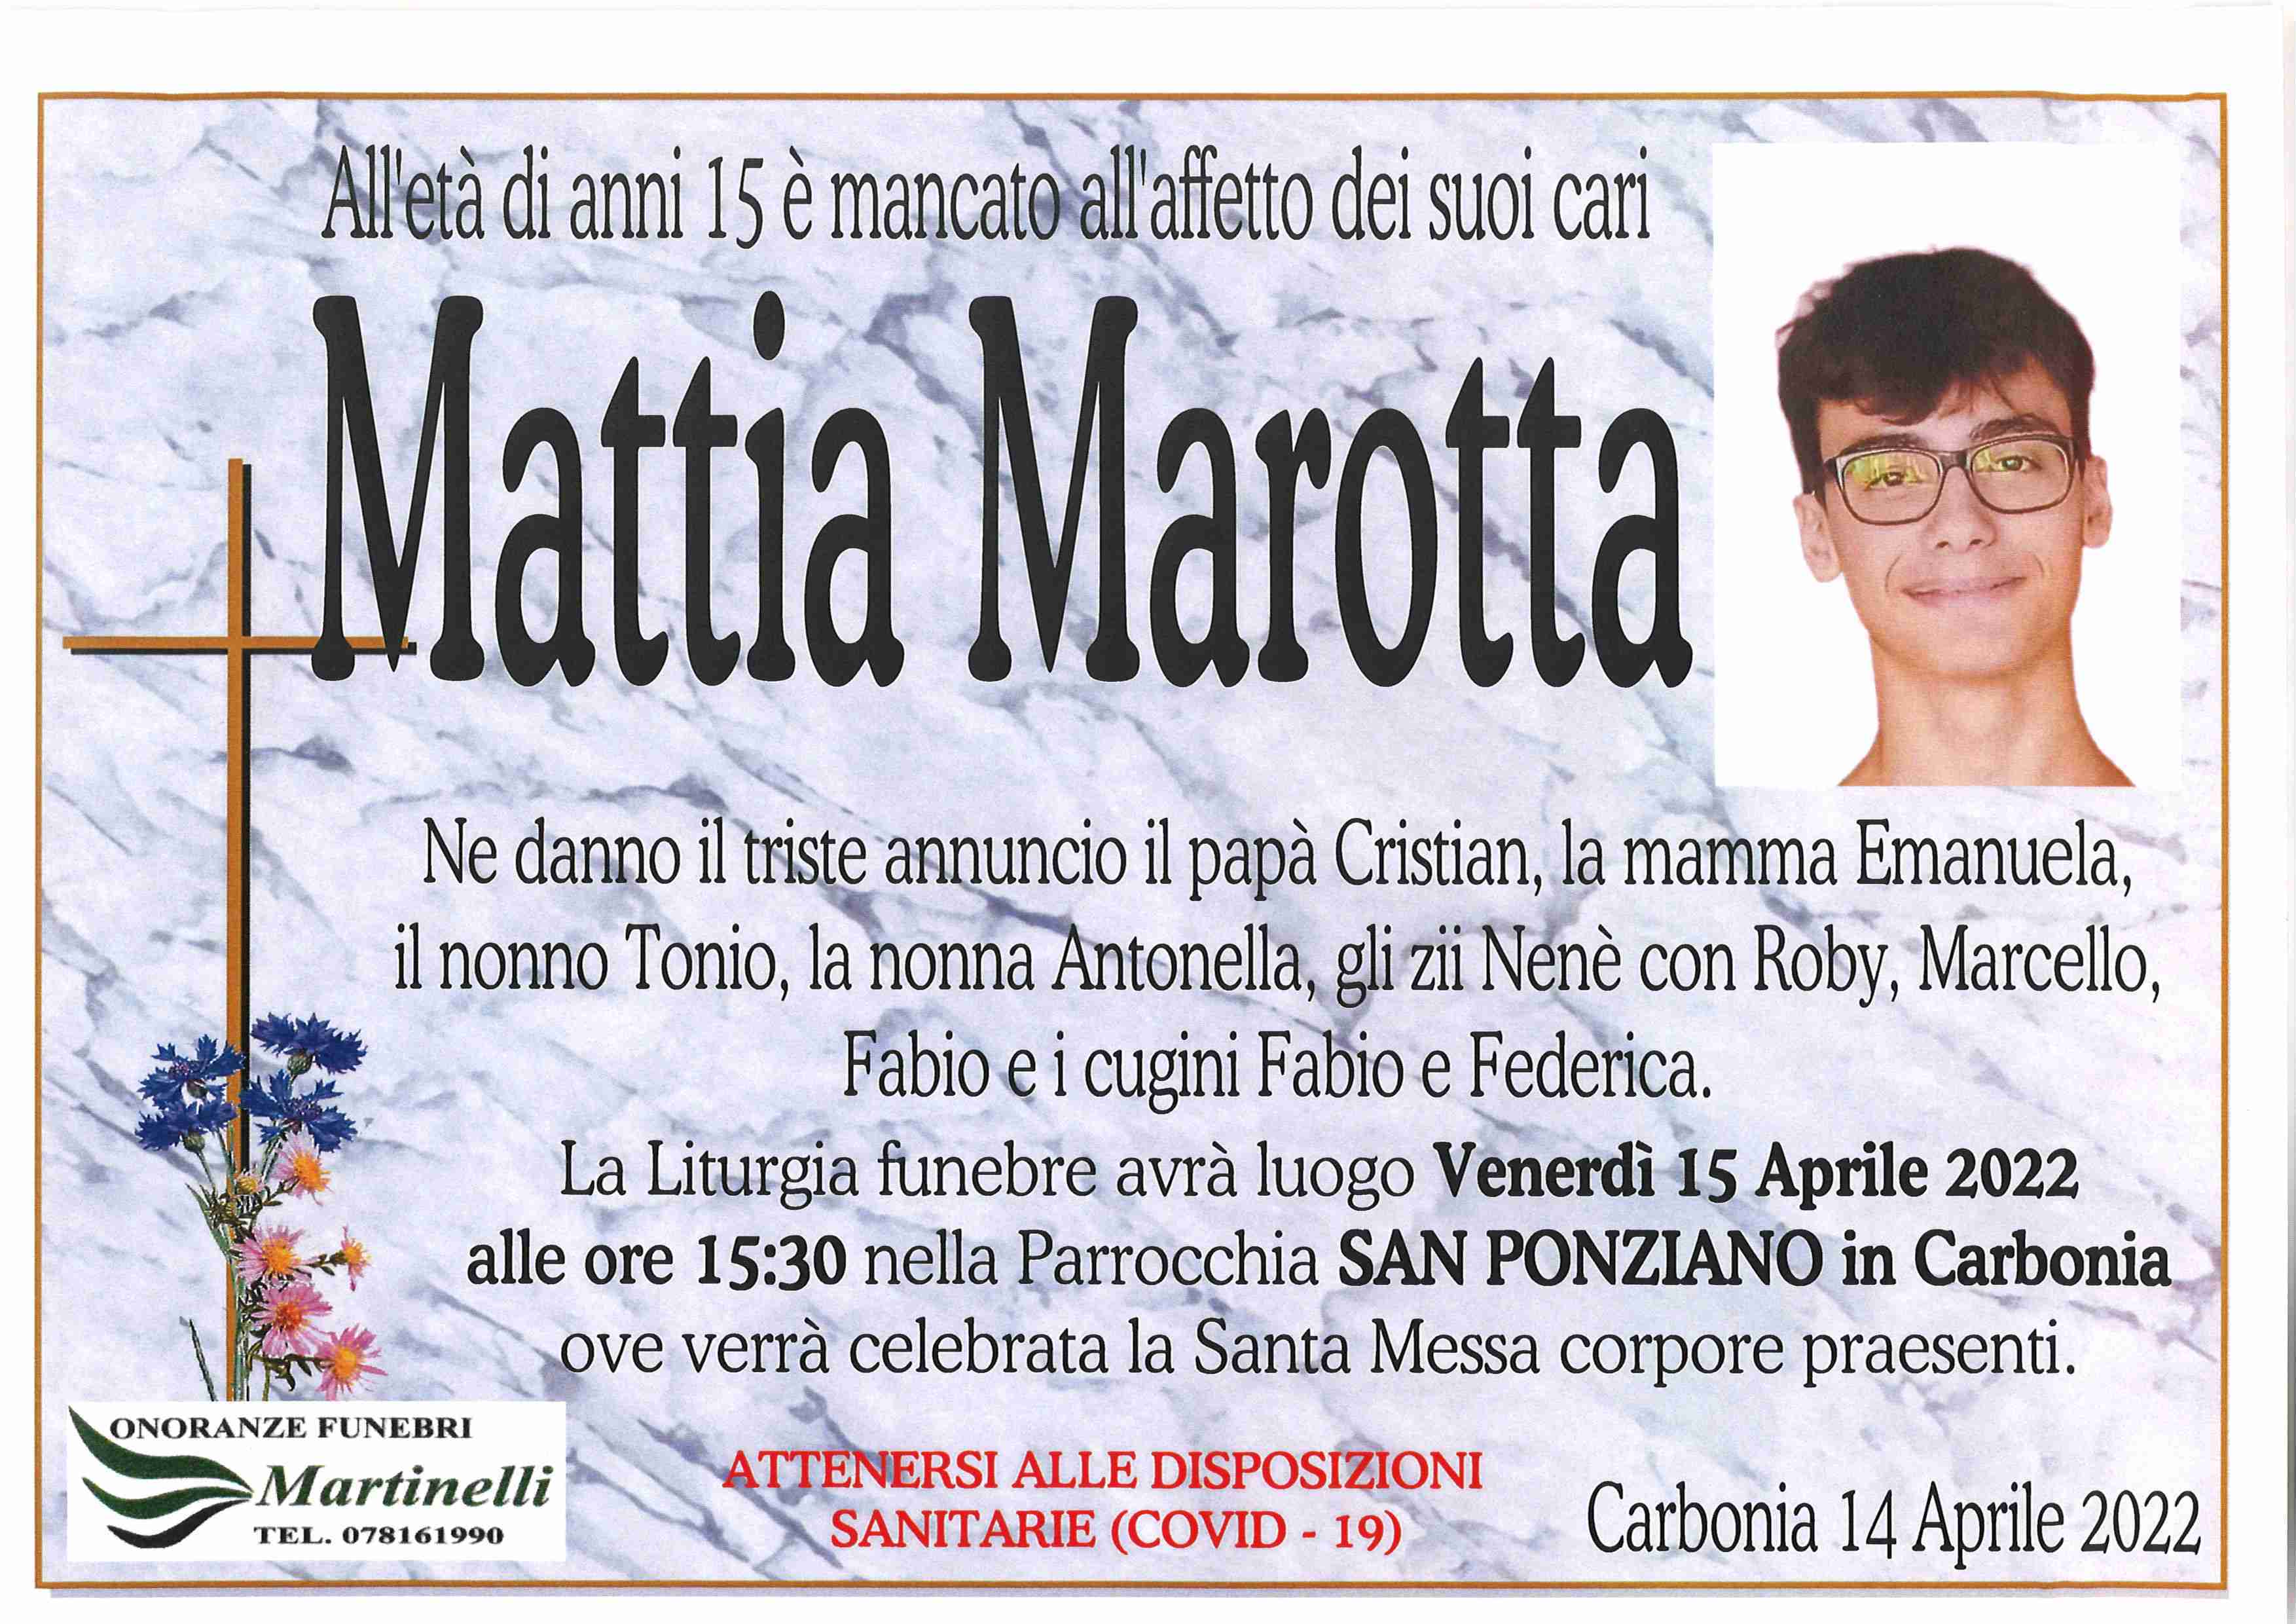 Mattia Marotta